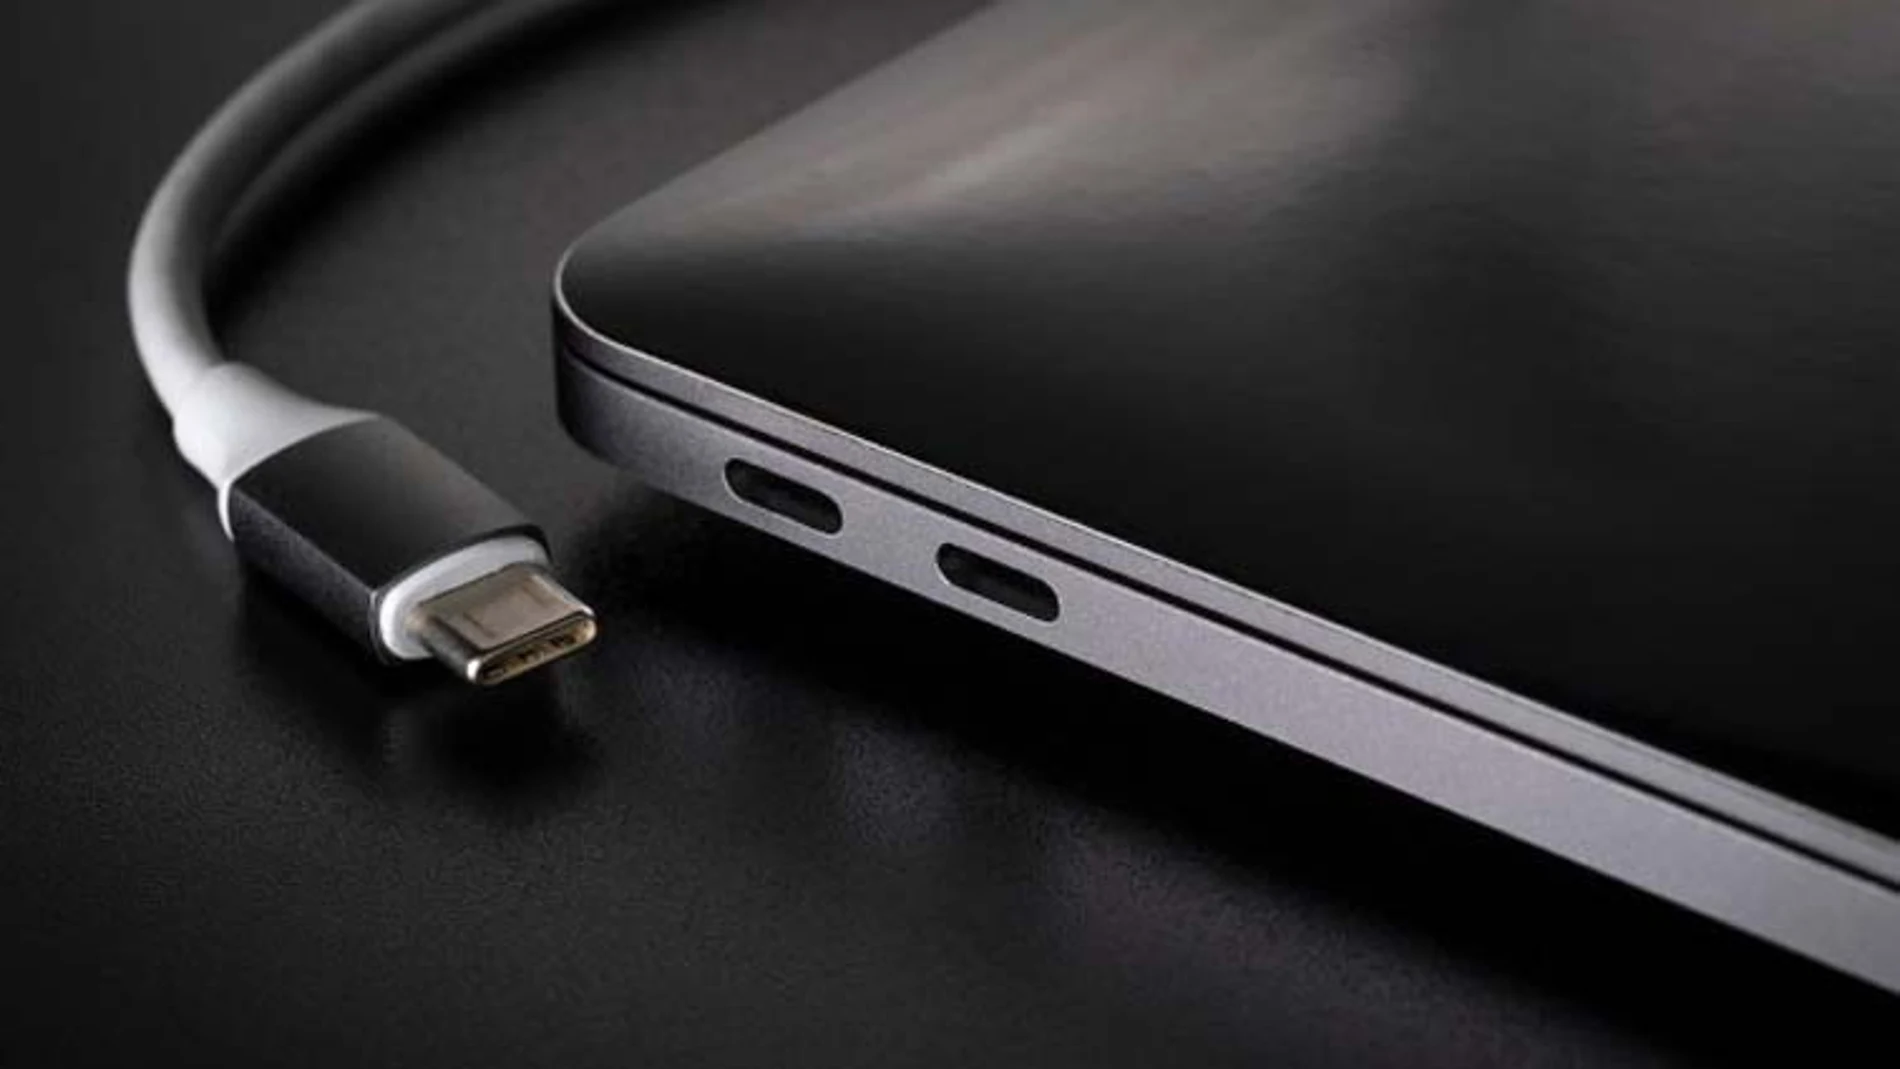 La nueva conexión USB 4 estará en el mercado a finales de 2020 y podrá transferir datos a tres velocidades (40, 20 y 10 Gbps).